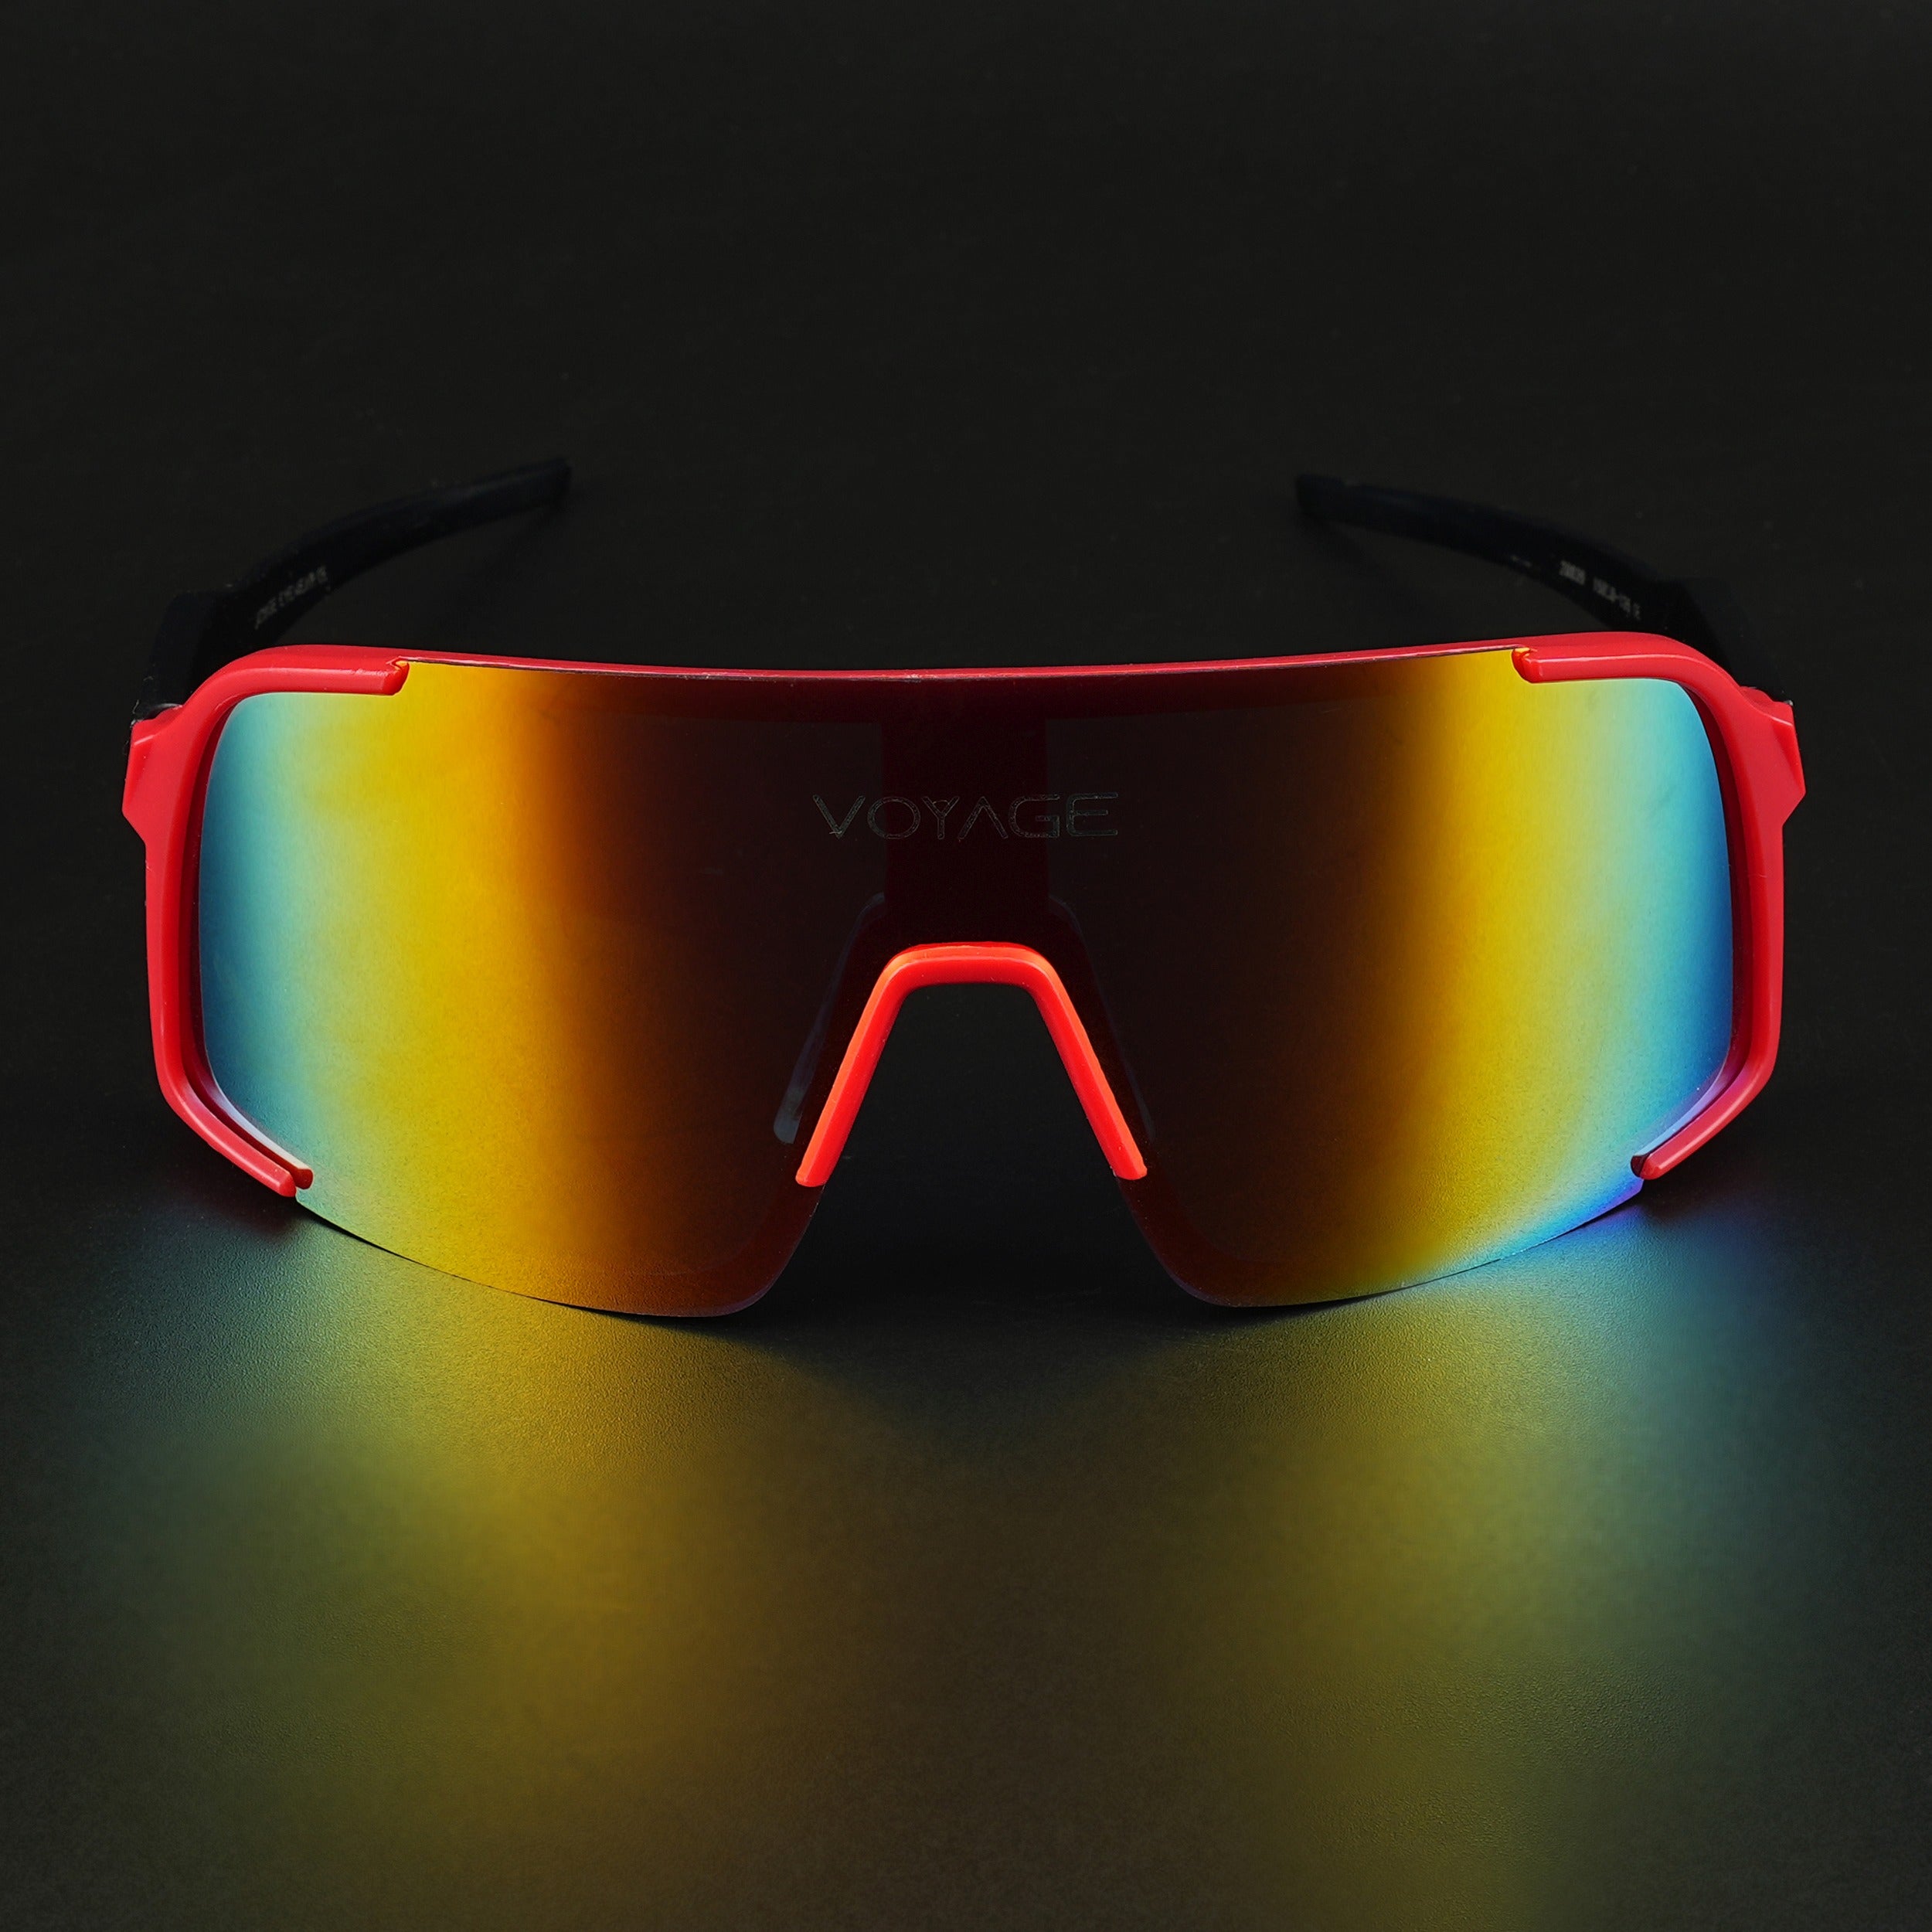 Voyage Drift Sunglasses for Men & Women (Multicolor Lens | Red Frame - MG5633)